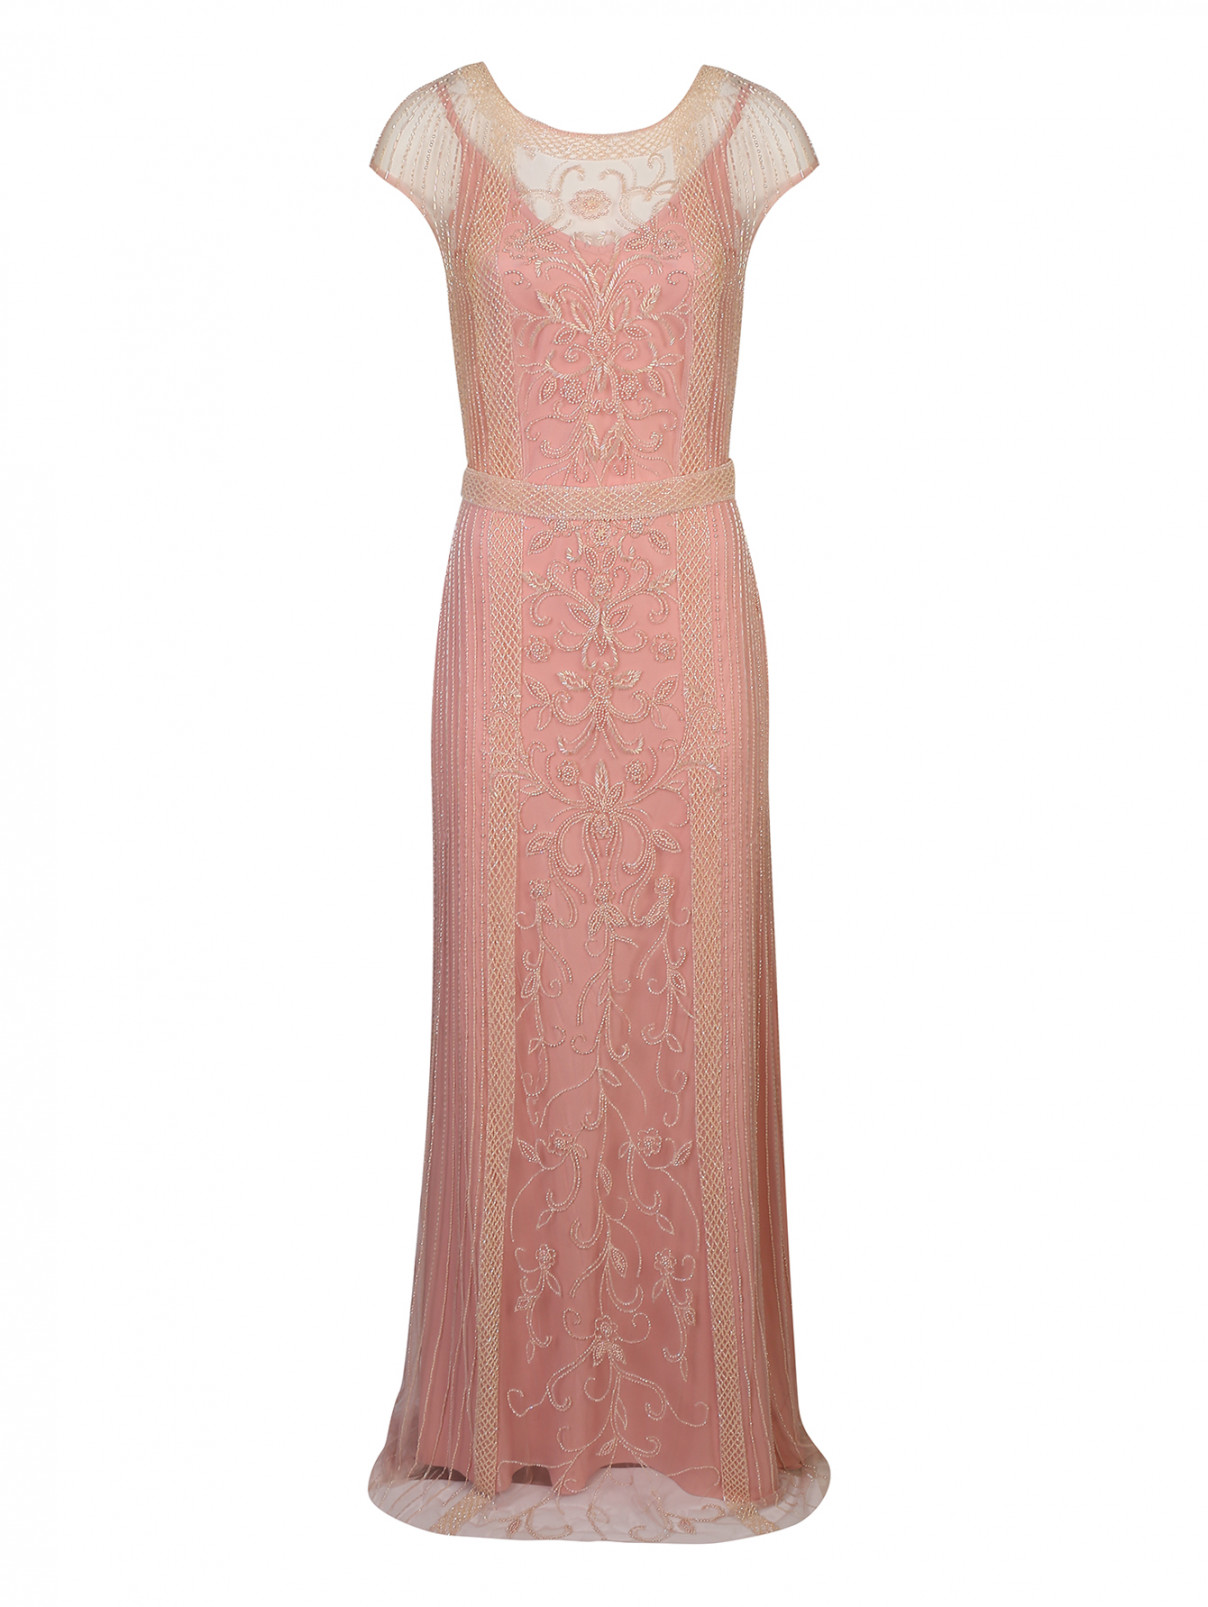 Платье макси из сетки с вышивкой бисером Rosa Clara  –  Общий вид  – Цвет:  Розовый